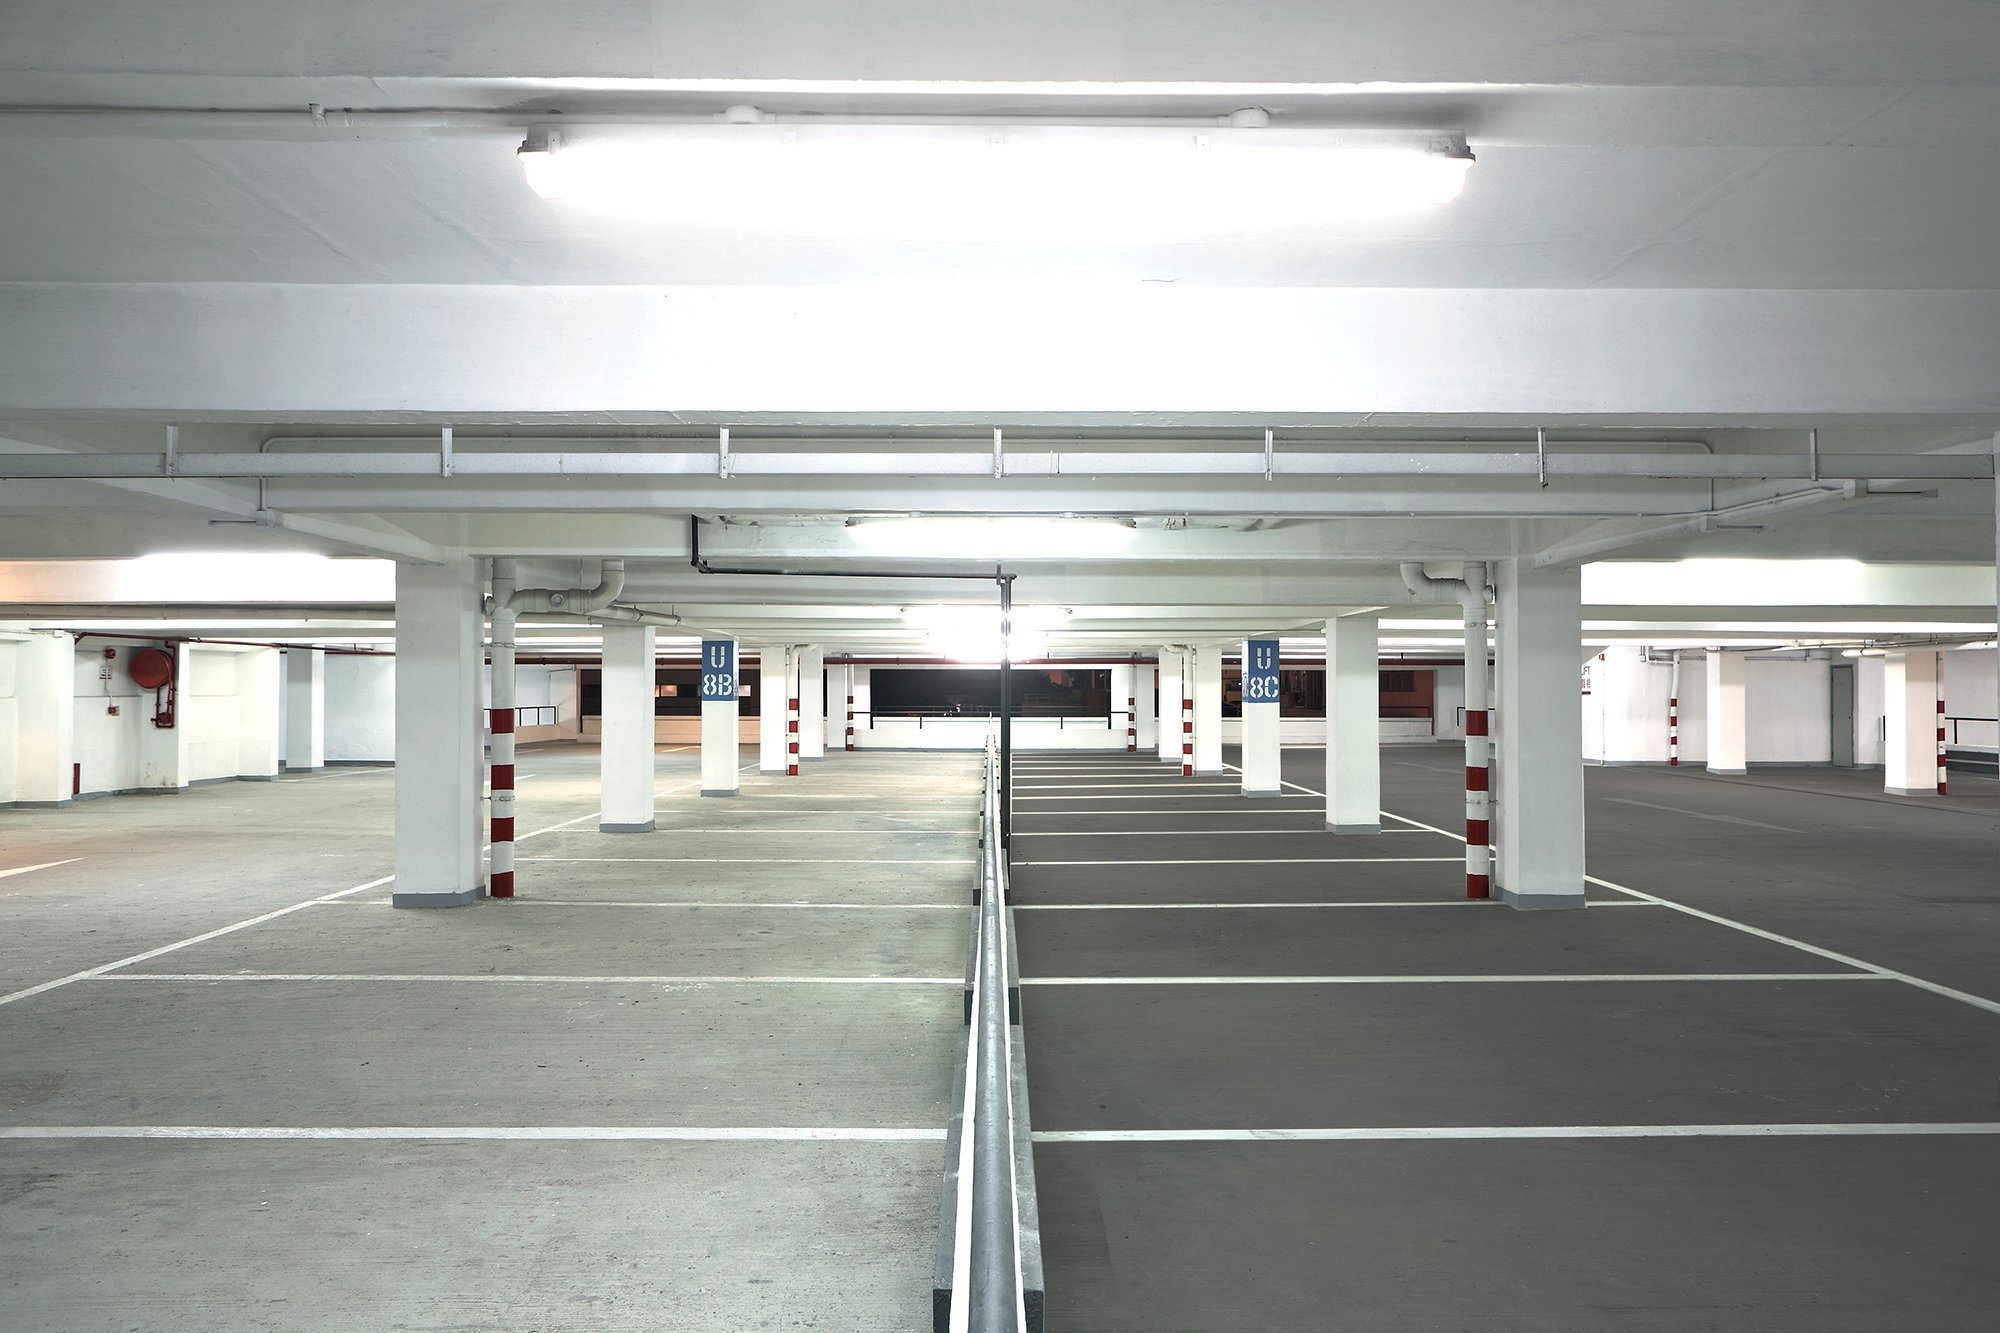 Parking Lots: Asphalt vs. Concrete